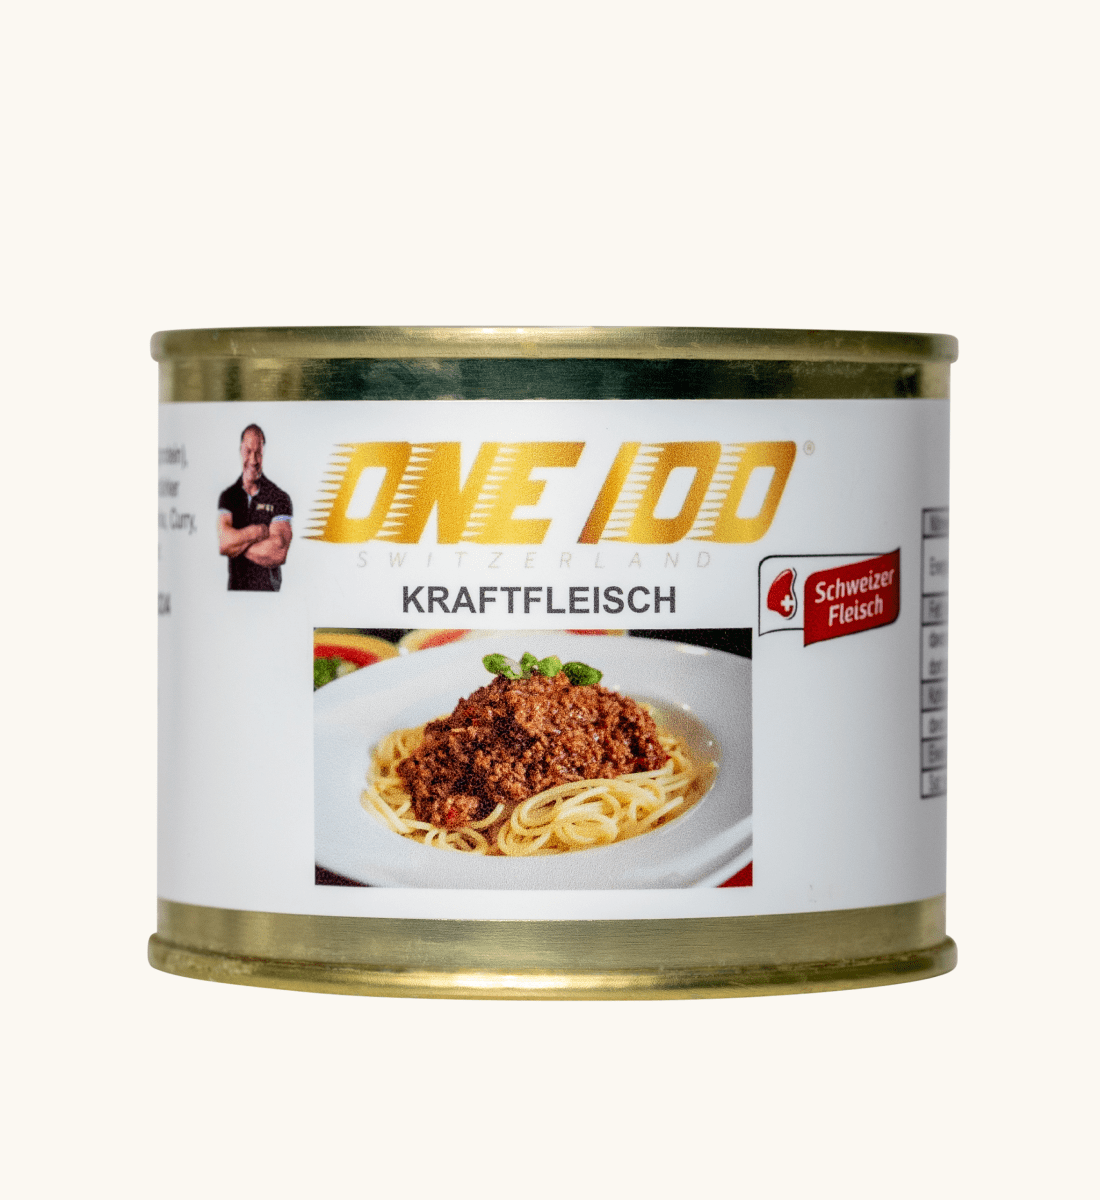 ONE 100 - Kraftfleisch / Rind 200g